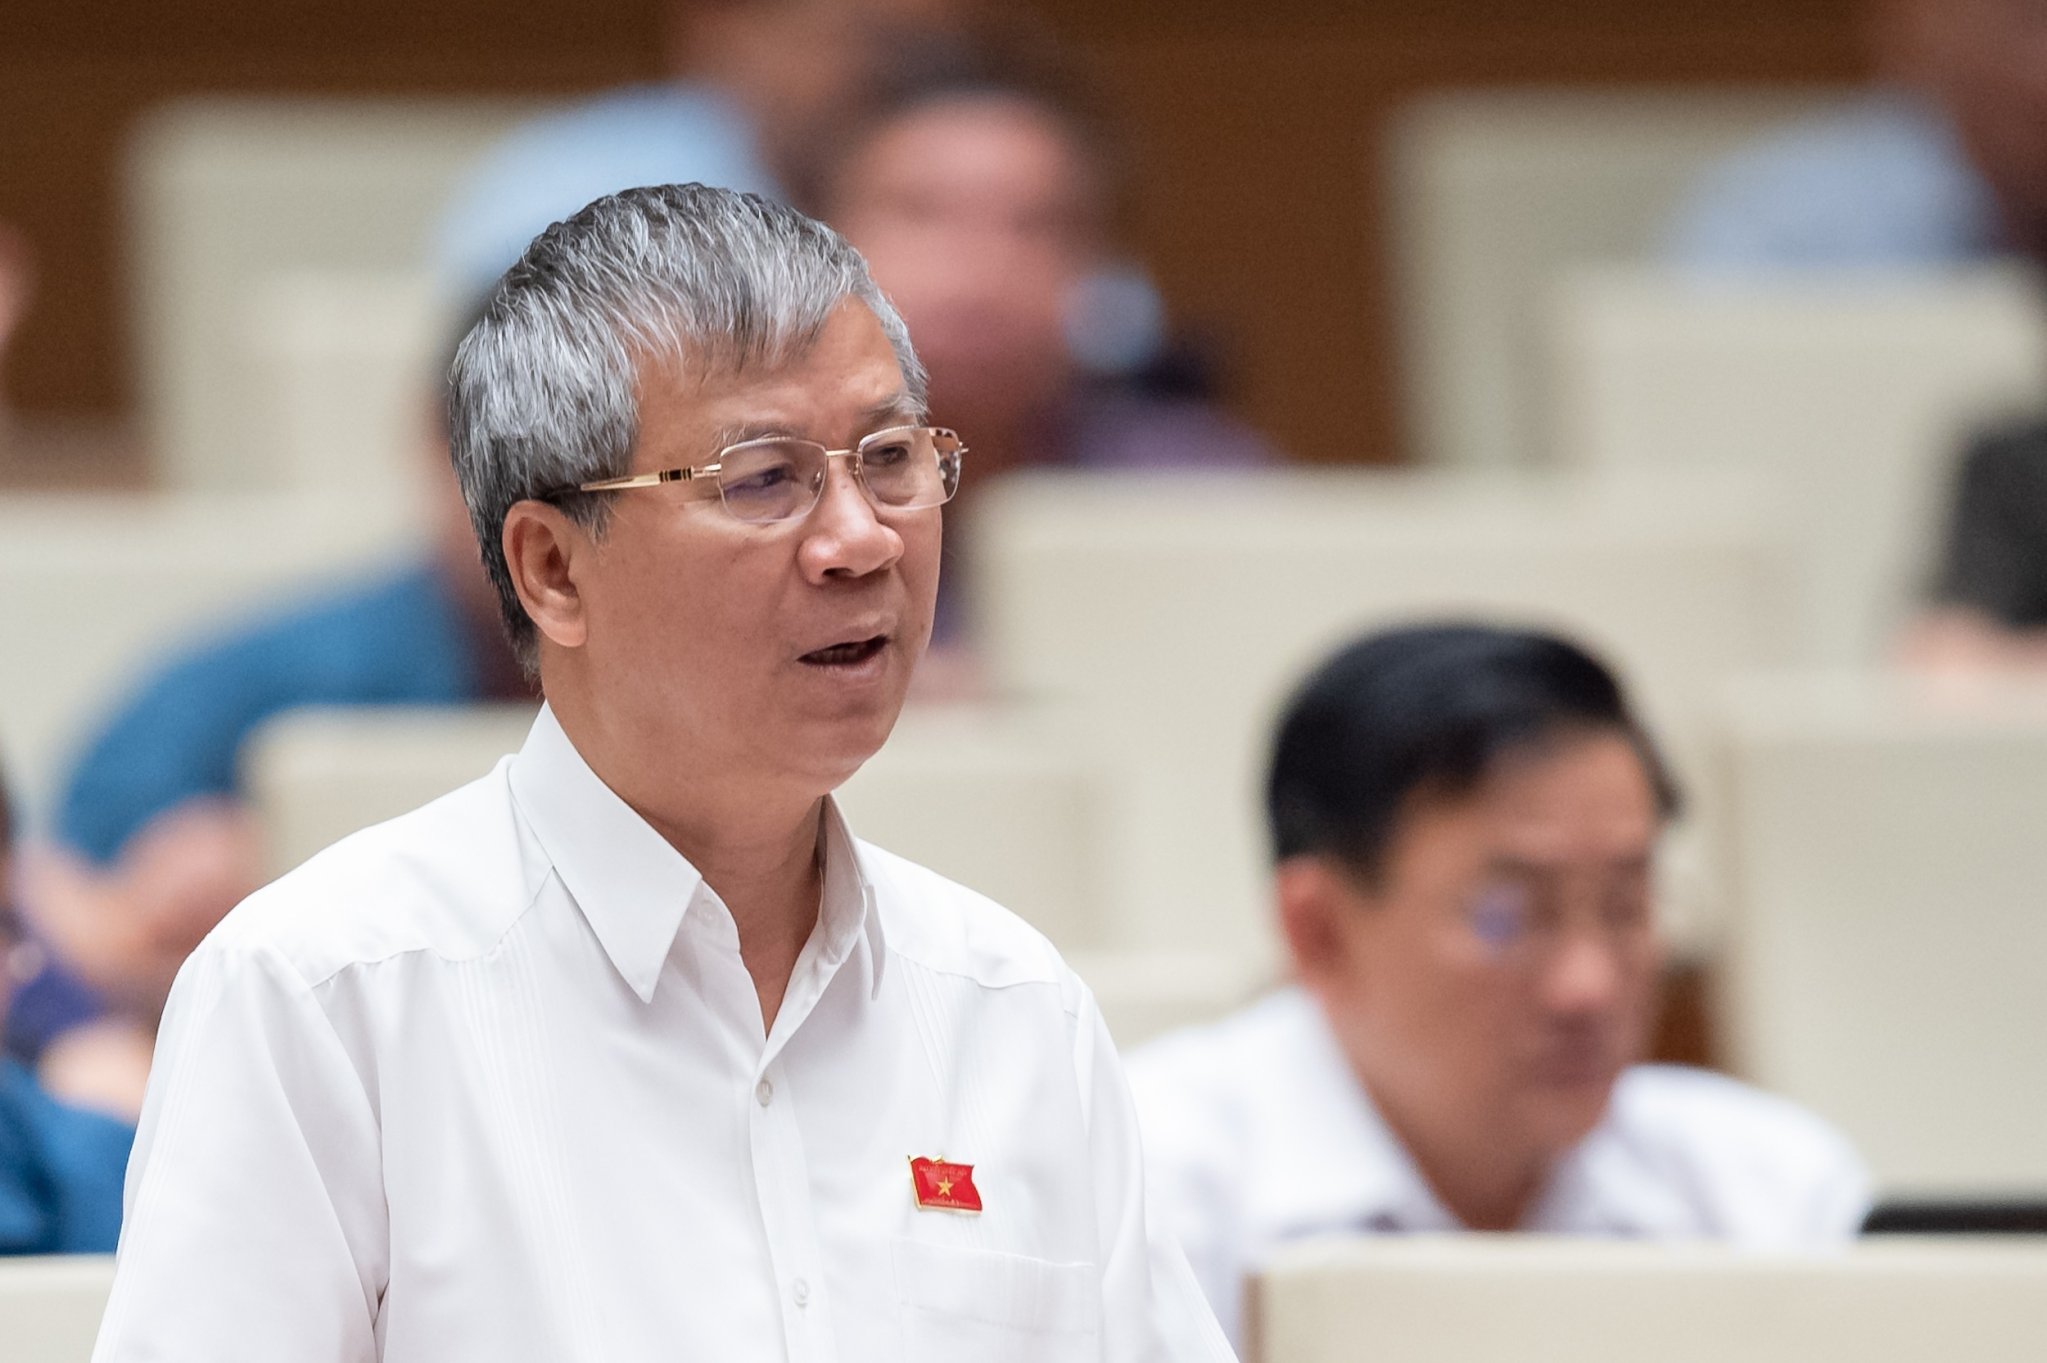 Đại biểu Nguyễn Anh Trí: Đề nghị ngừng nghiên cứu, sản xuất vaccine Covid-19 tại Việt Nam